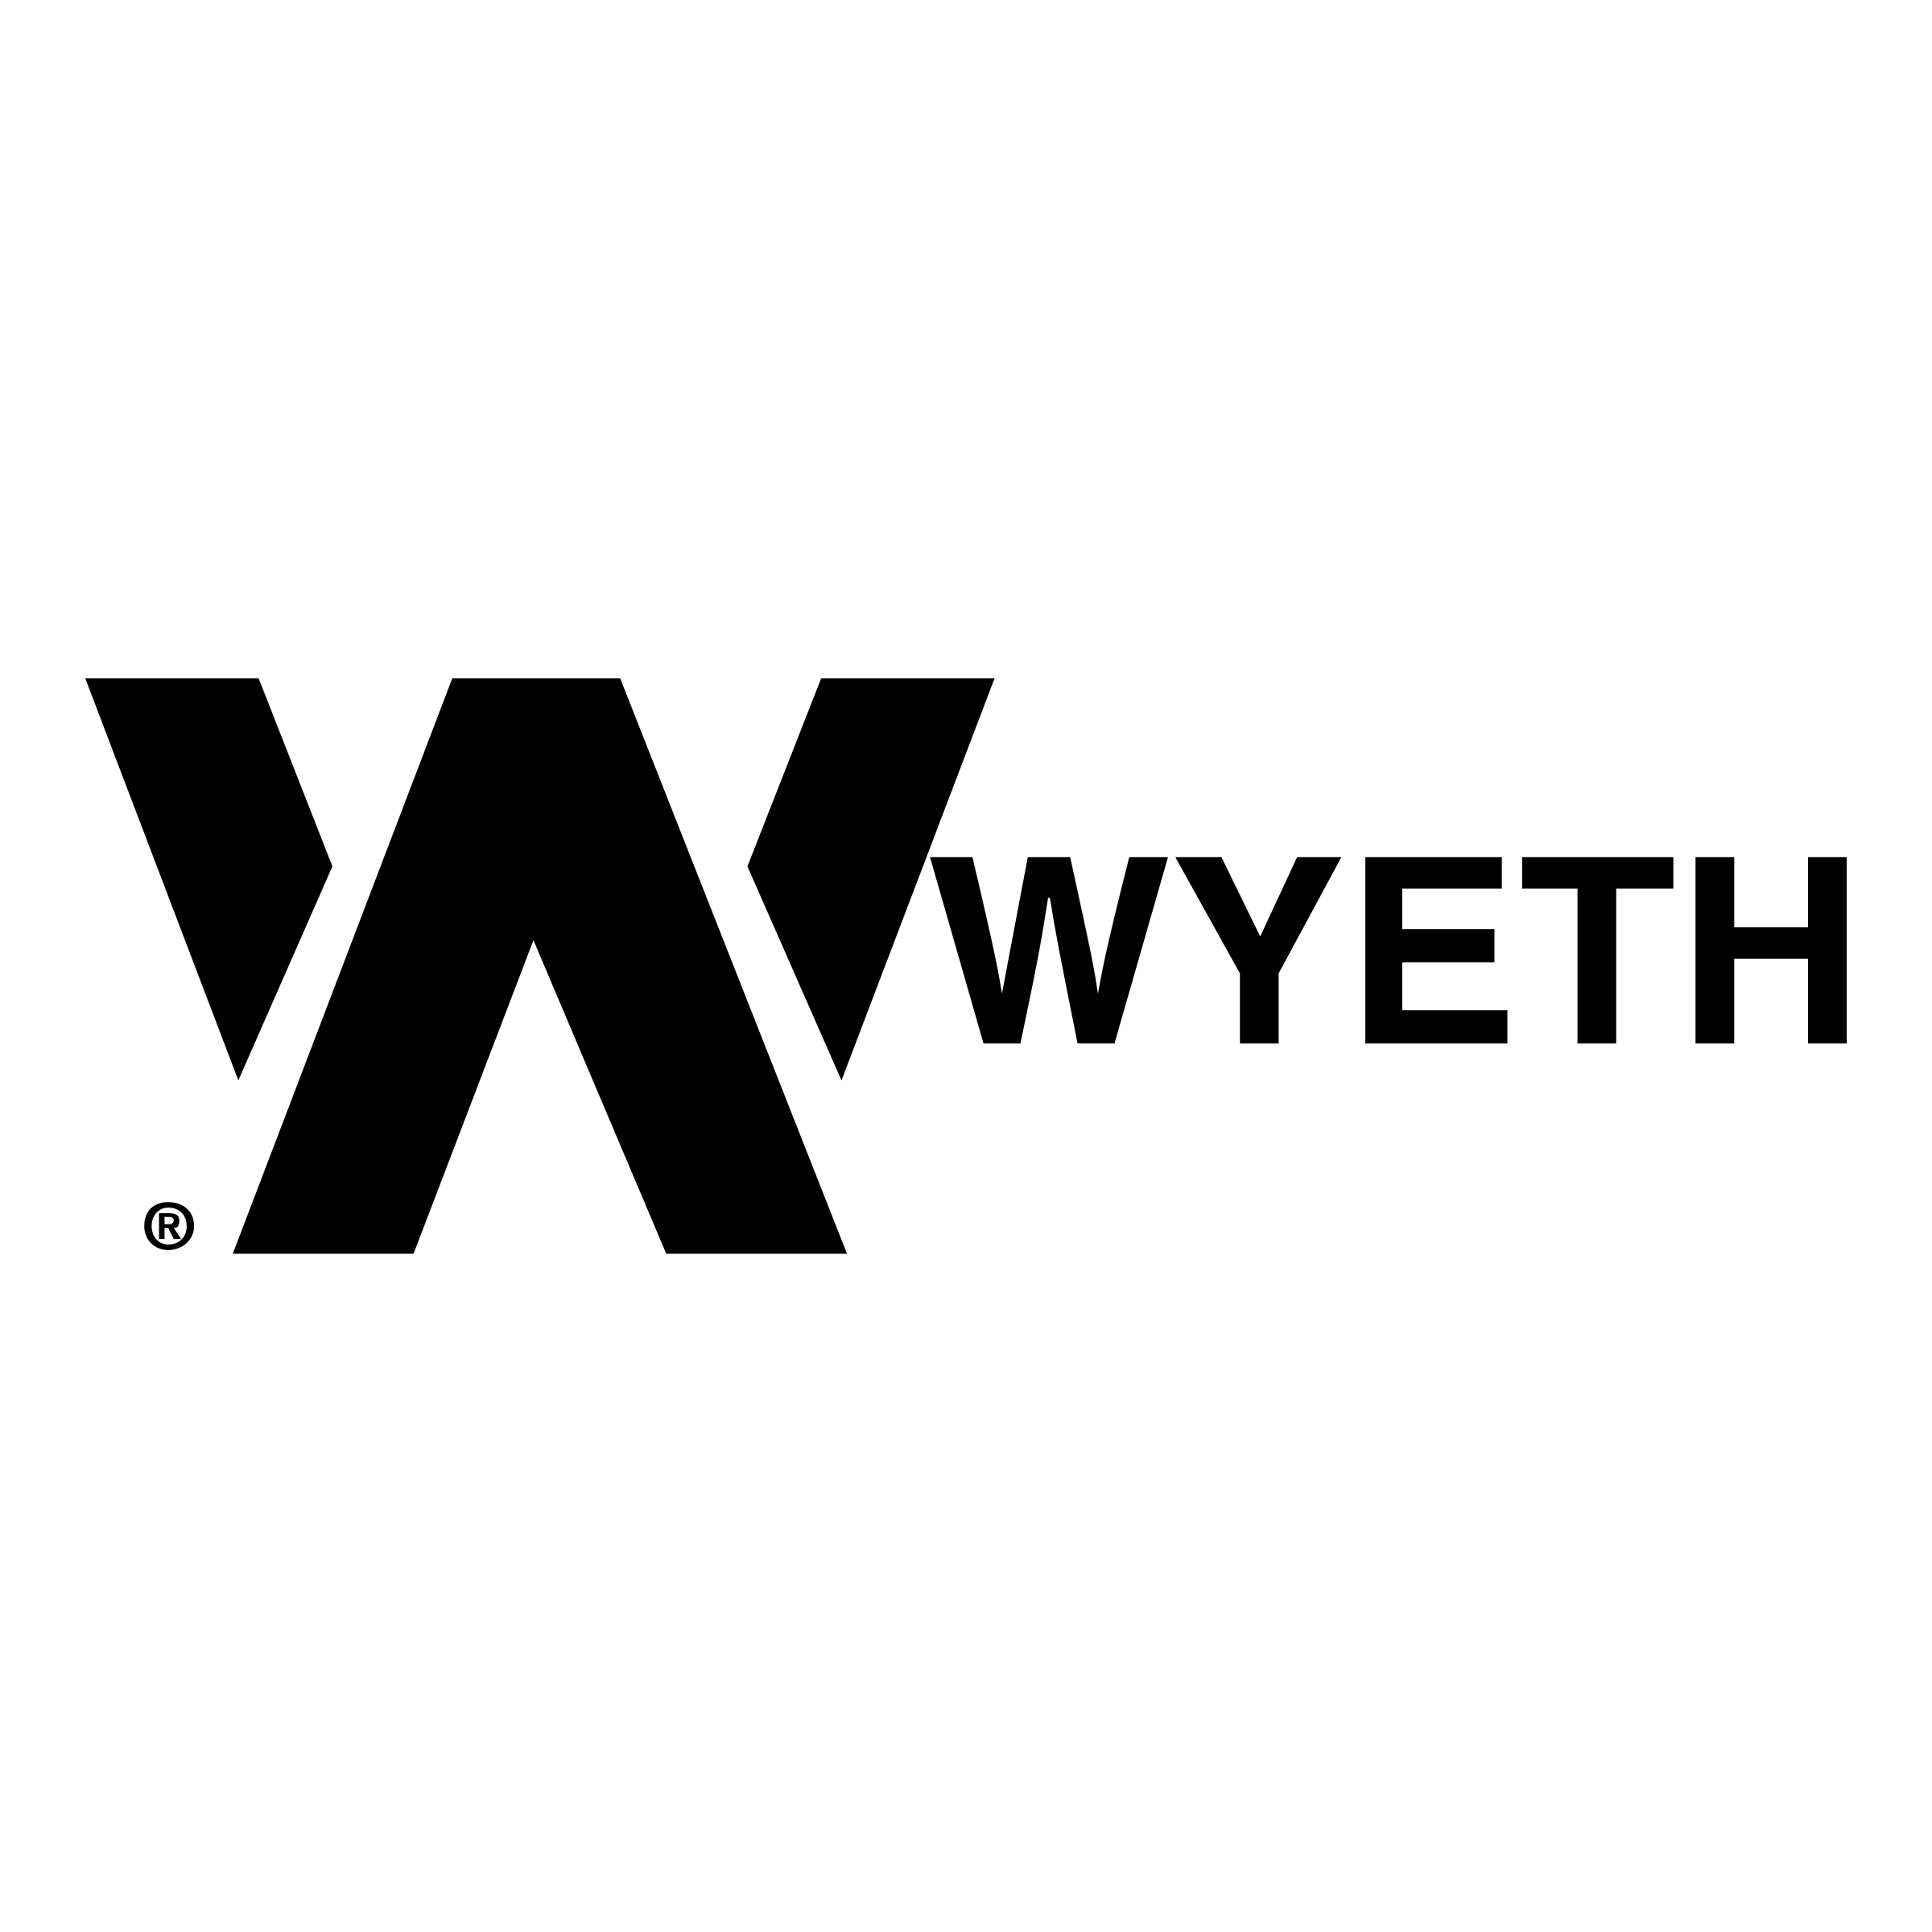 Wyeth Logo - Wyeth Logo PNG Transparent & SVG Vector - Freebie Supply